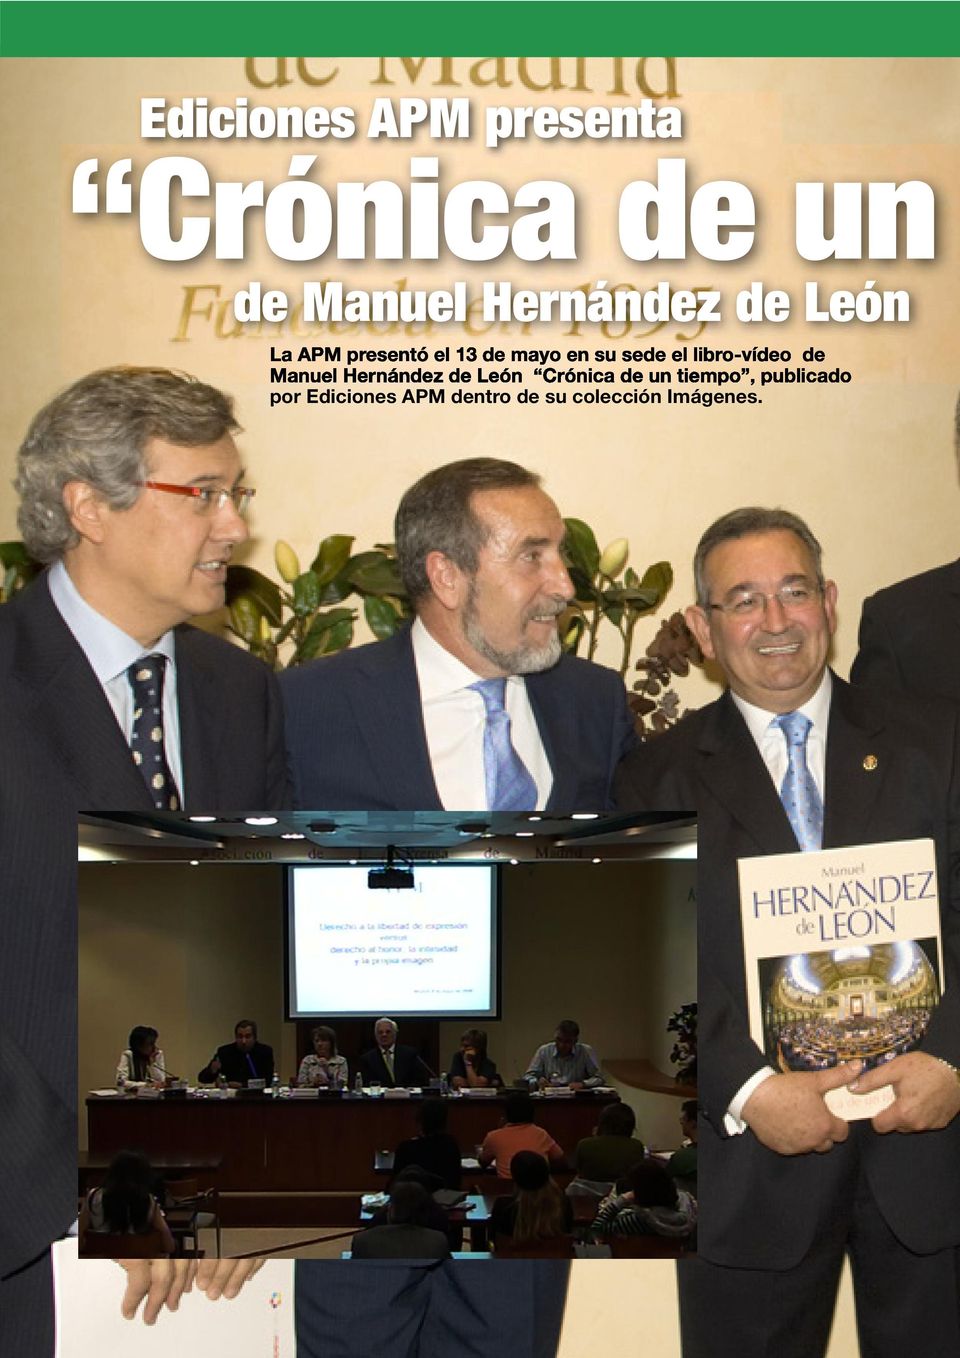 libro-vídeo de Manuel Hernández de León Crónica de un